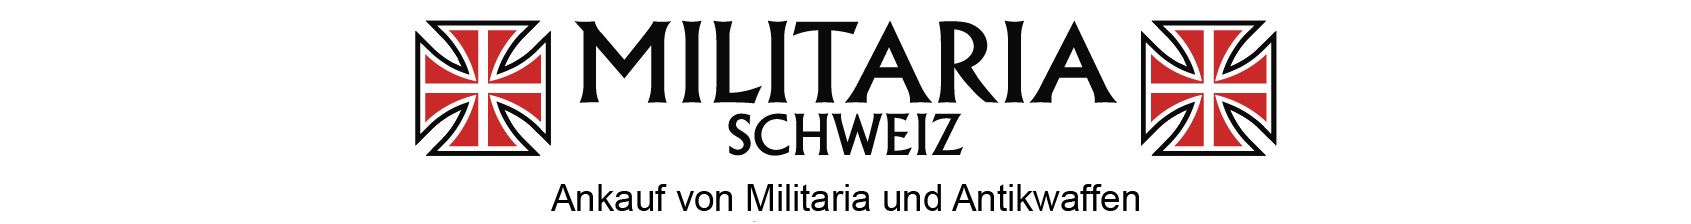 Militaria-Schweiz - Ankauf von Militaria und Antikwaffen